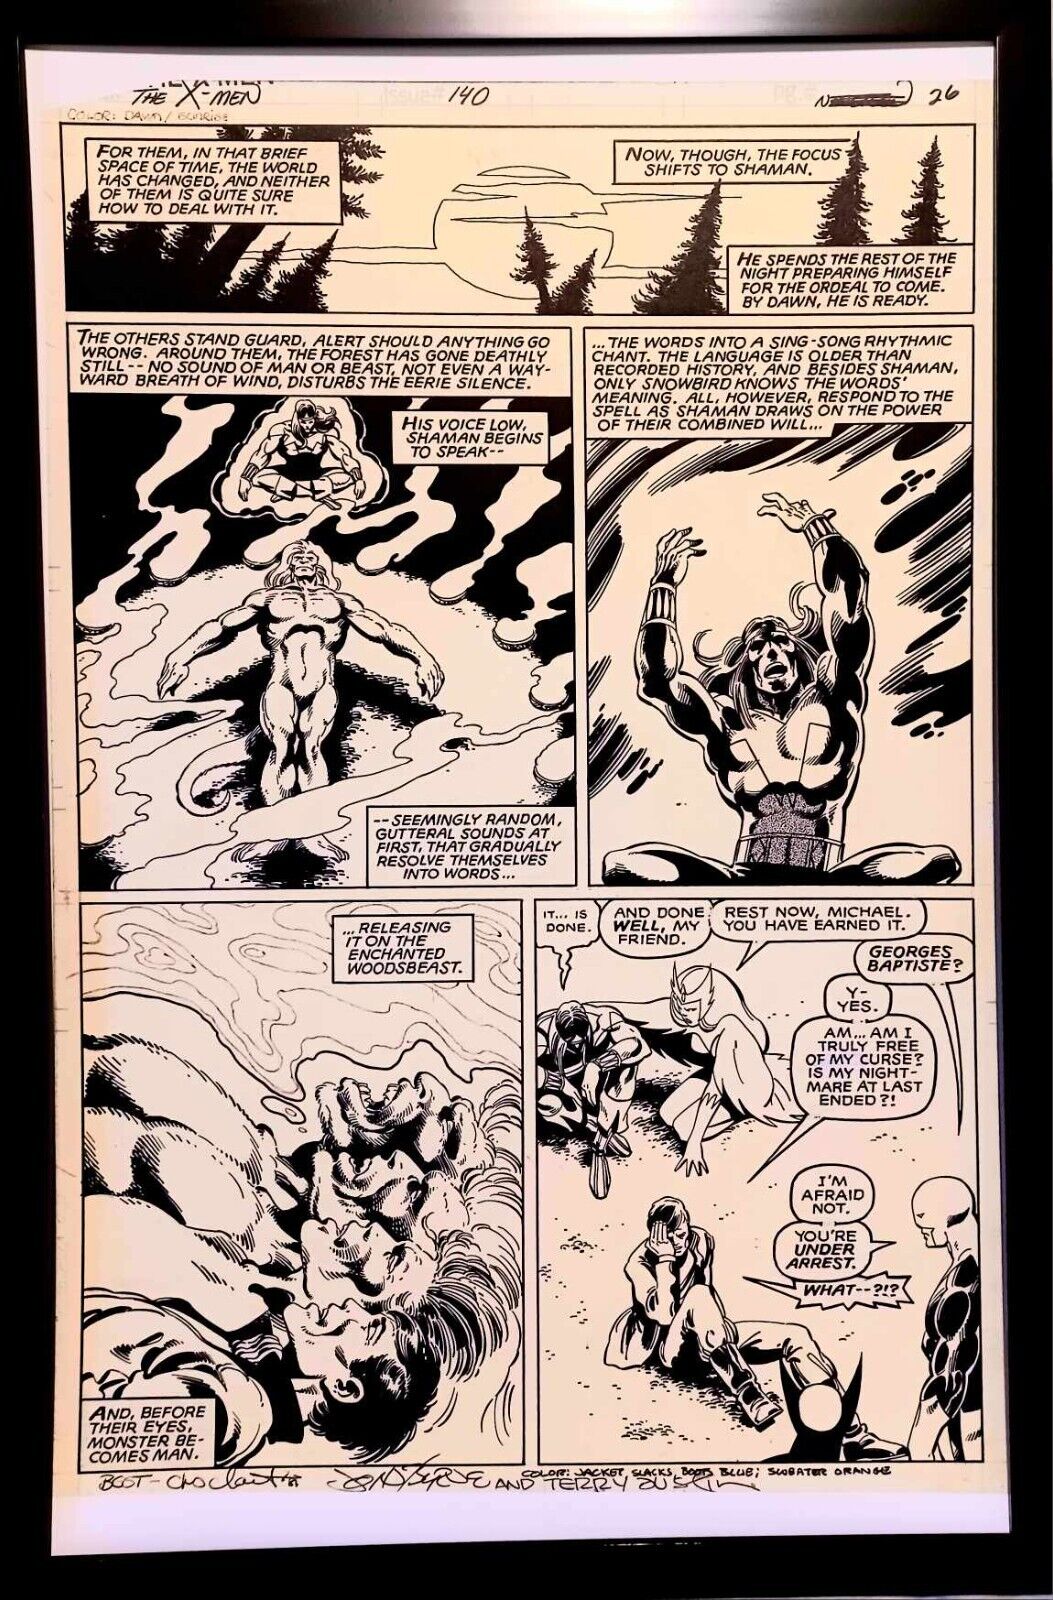 Uncanny X-Men #140 pg. 26 by John Byrne 11x17 FRAMED Original Art Print Poster